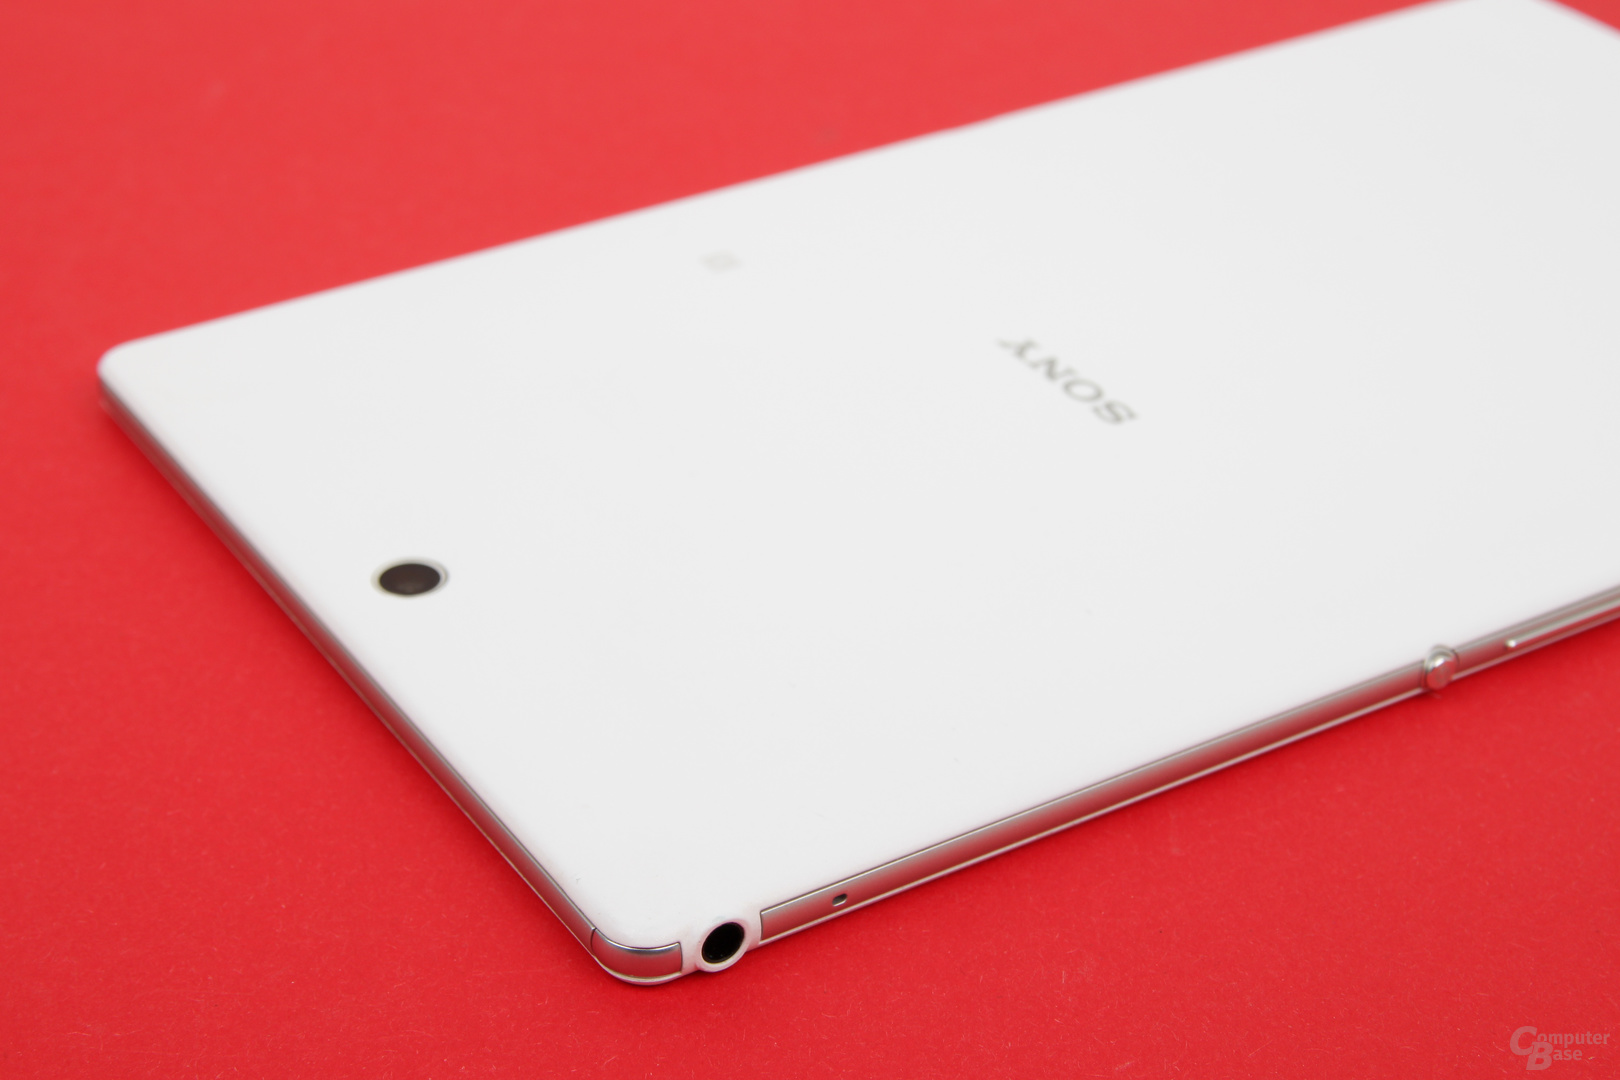 Das Sony Xperia Z3 Tablet Compact ist sehr dünn und gut verarbeitet